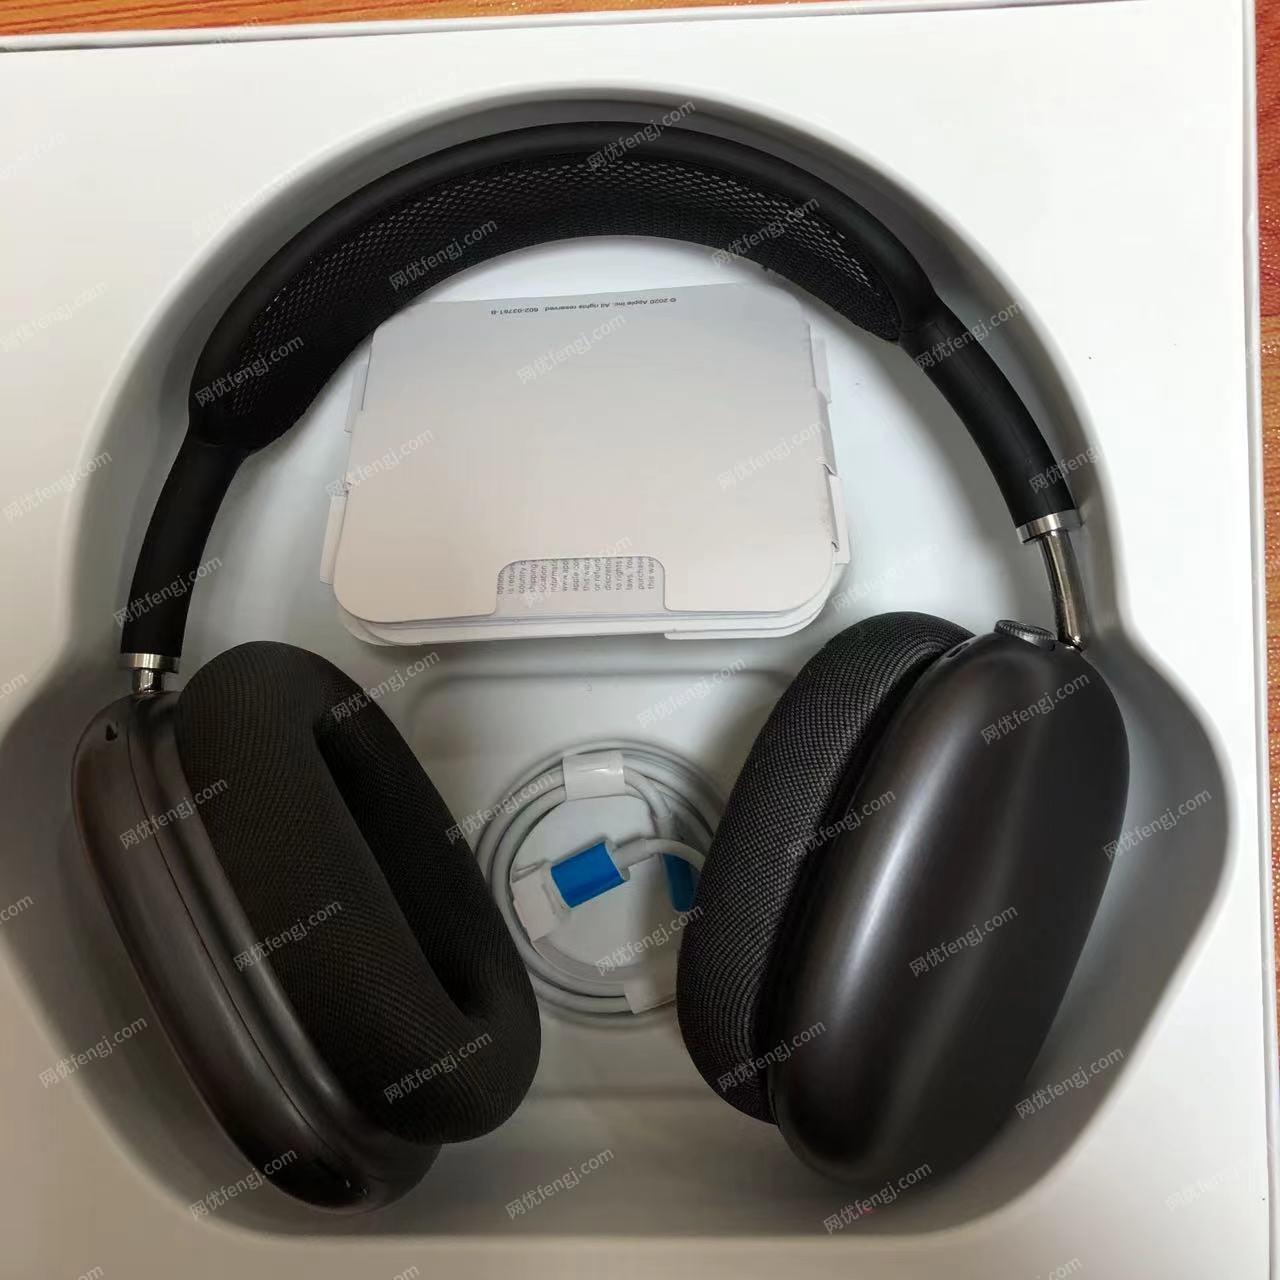 出售华强北airpodsmax头戴耳机1:1蓝牙耳机支持IOS16弹窗耳机蓝牙无线